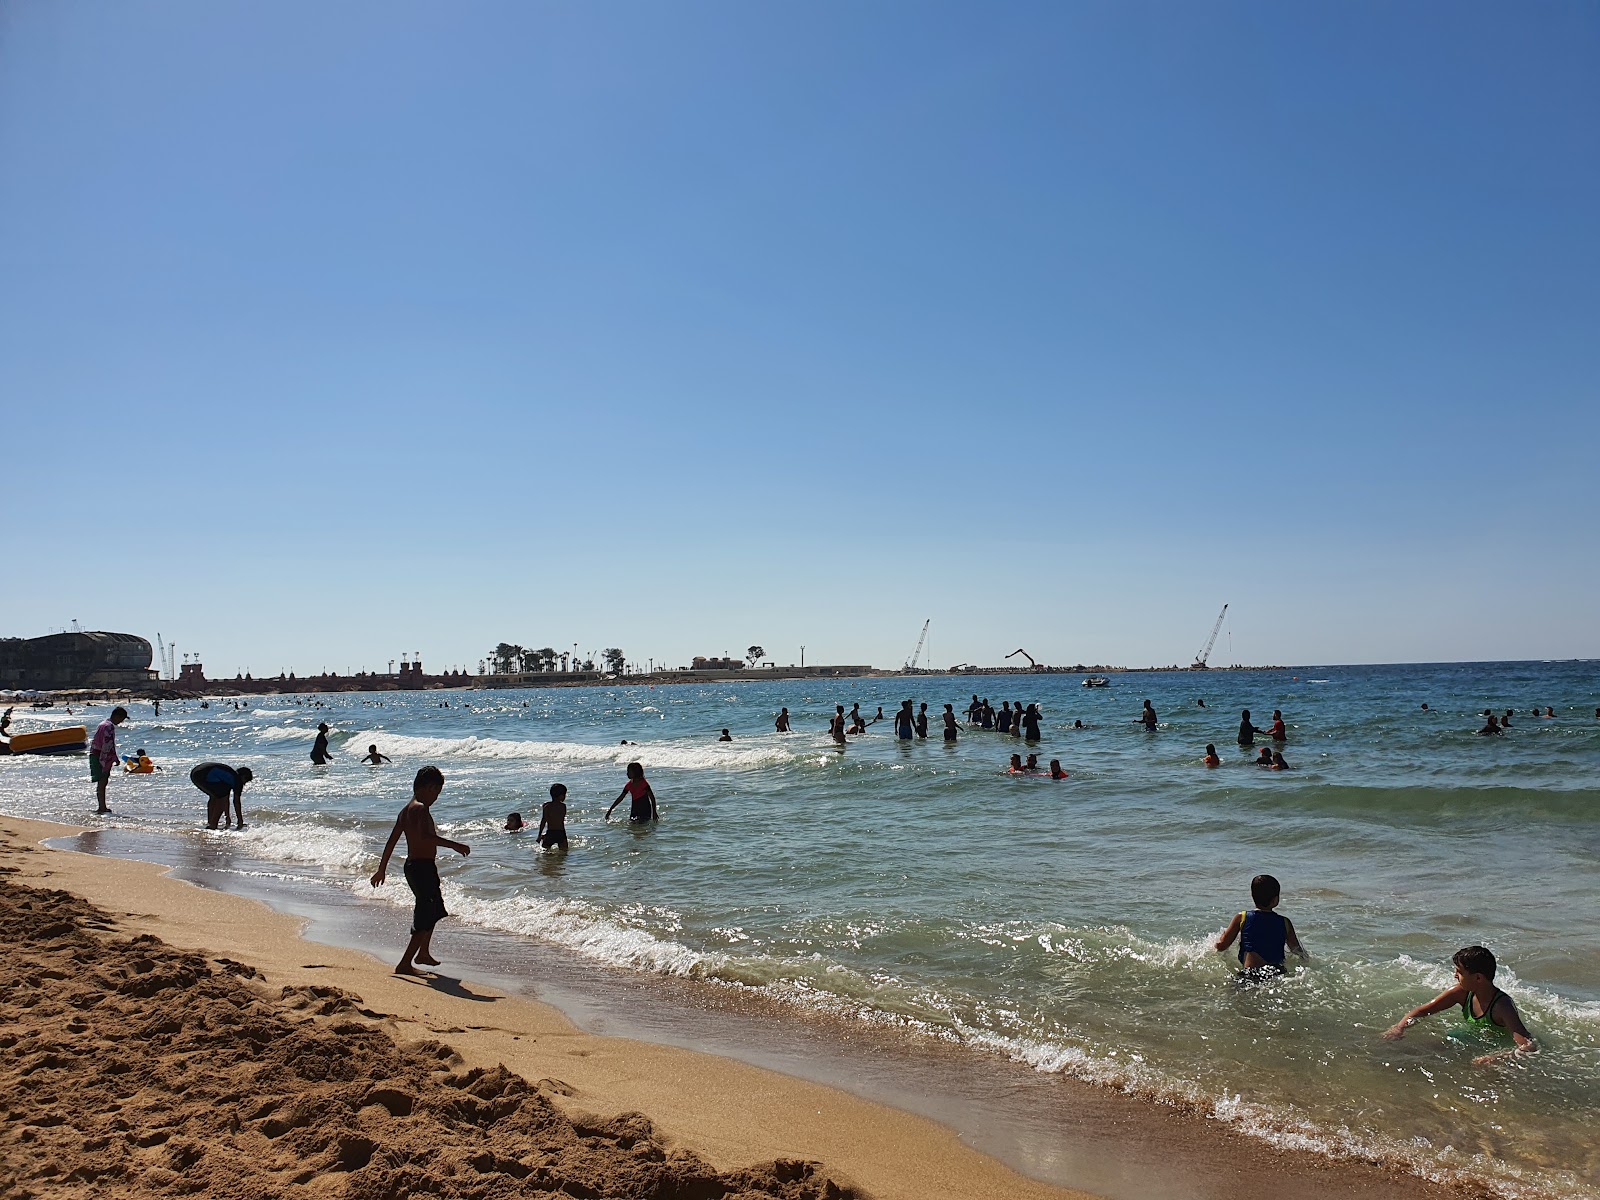 Fotografie cu El Mamurah Beach - locul popular printre cunoscătorii de relaxare